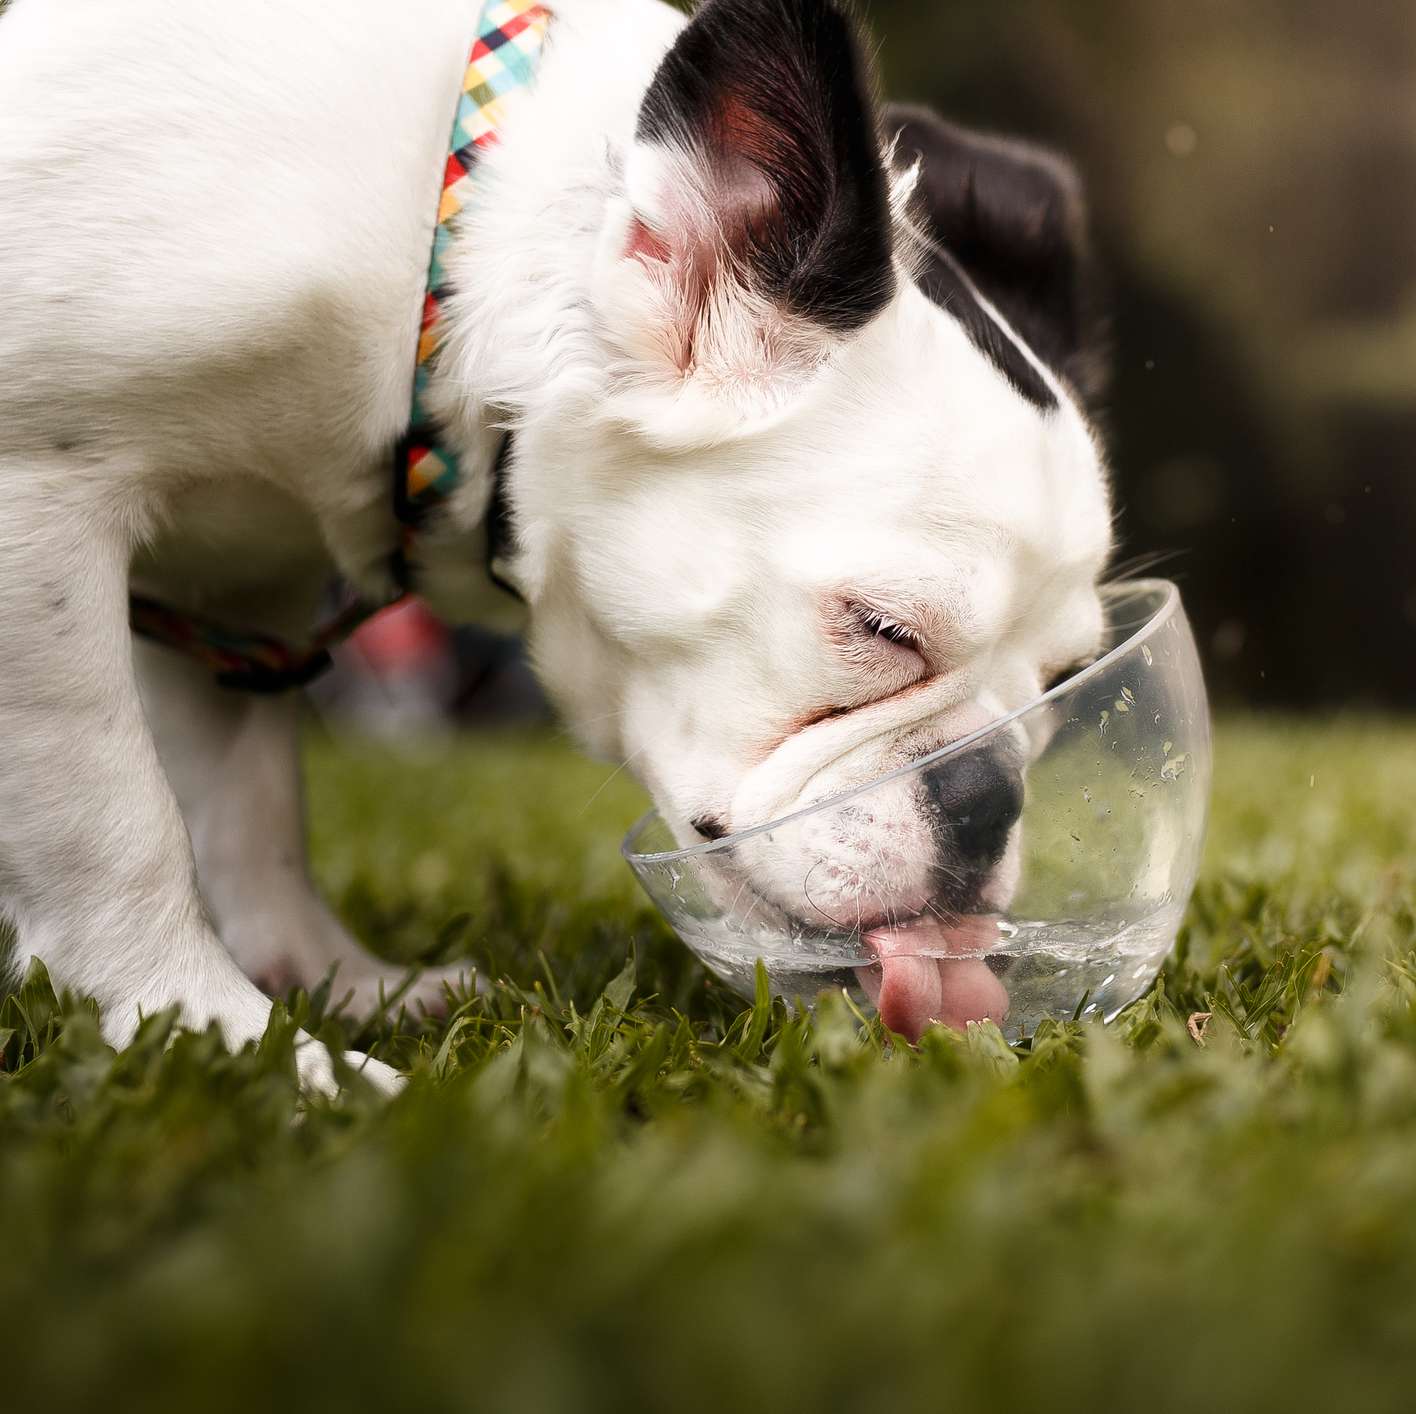 Allianz - Hundekrankenversicherung - Hund trinkt nicht: Bulldogge trinkt aus einer durchsichtigen Schüssel